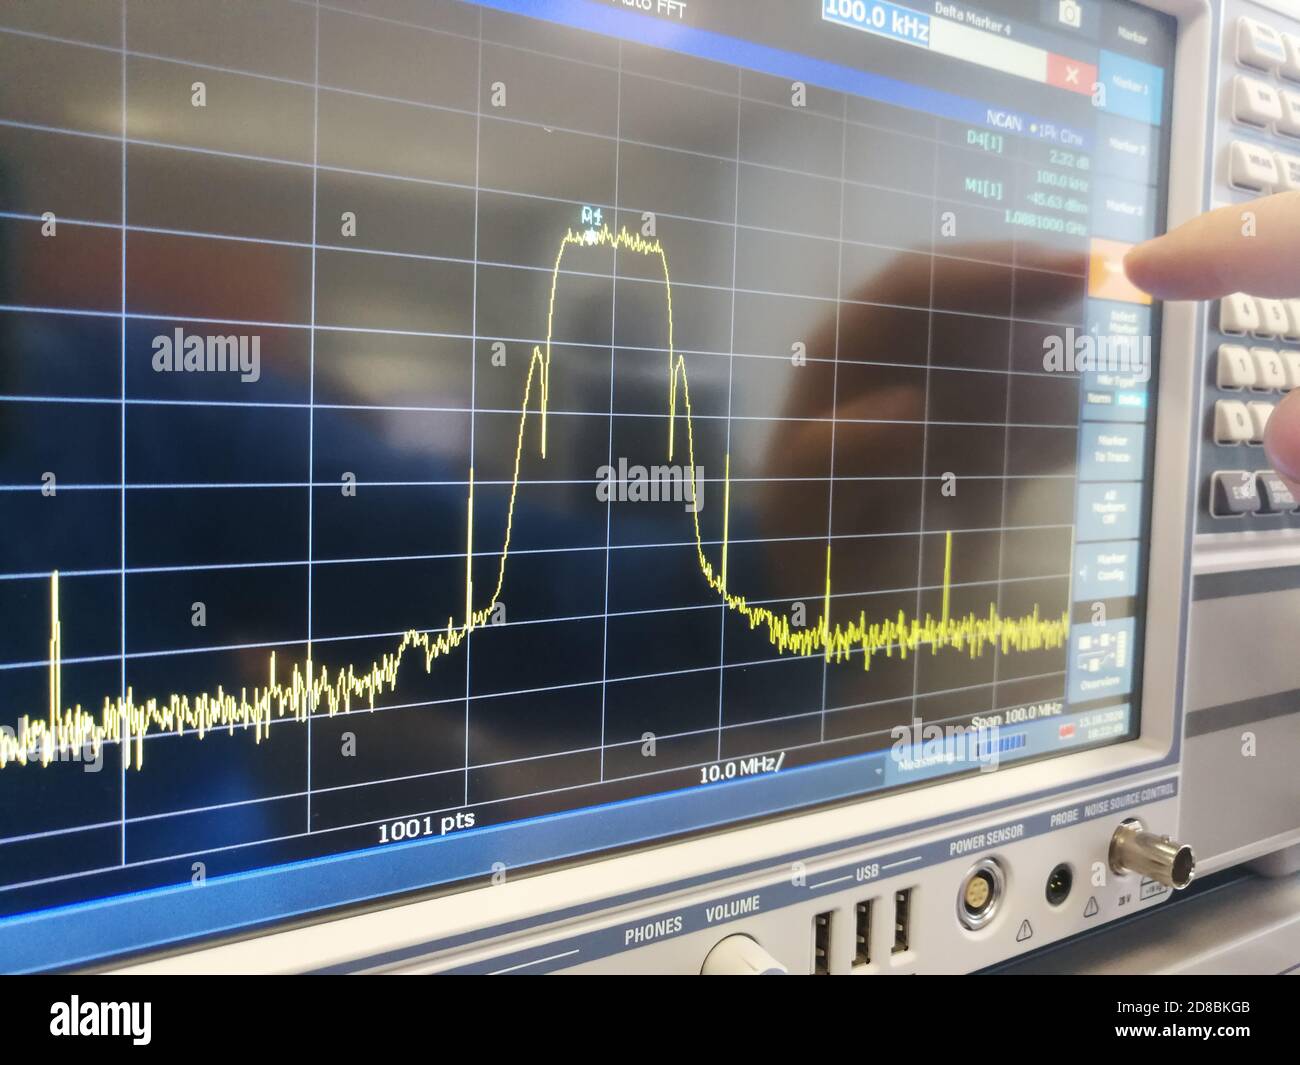 Analisi dello spettro del canale di trasmissione dei dati in radiofrequenza in spettro professionale Schermo LCD dell'analizzatore Foto Stock